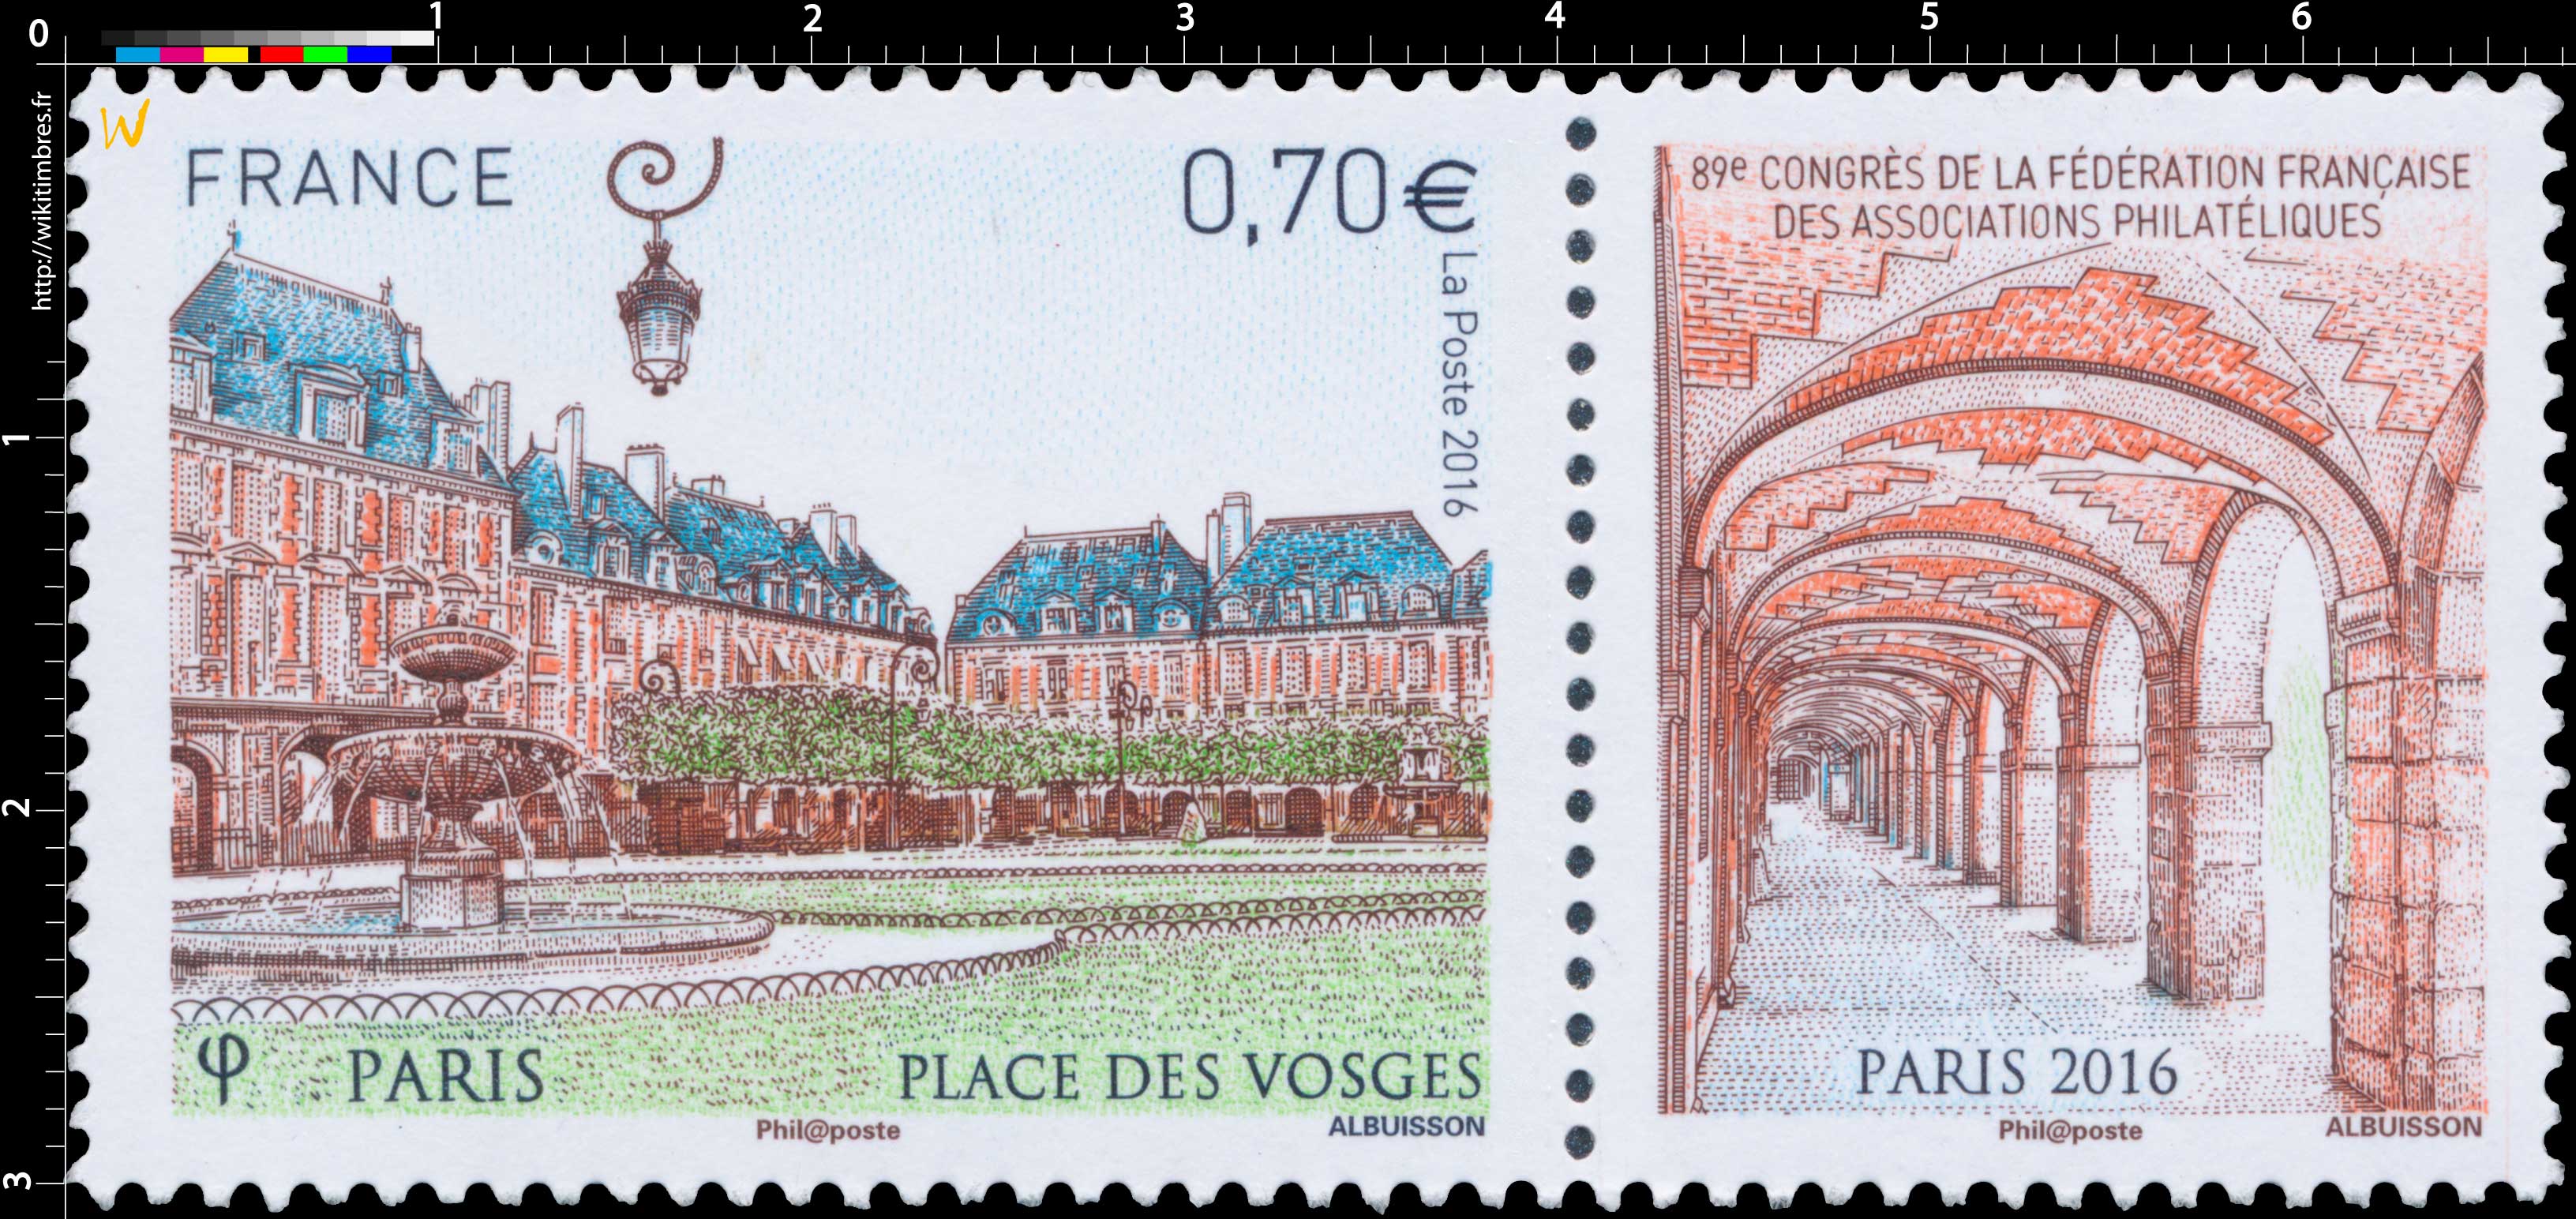 2016 Place des Vosges - 89e Congrès de la fédération française des associations philatéliques